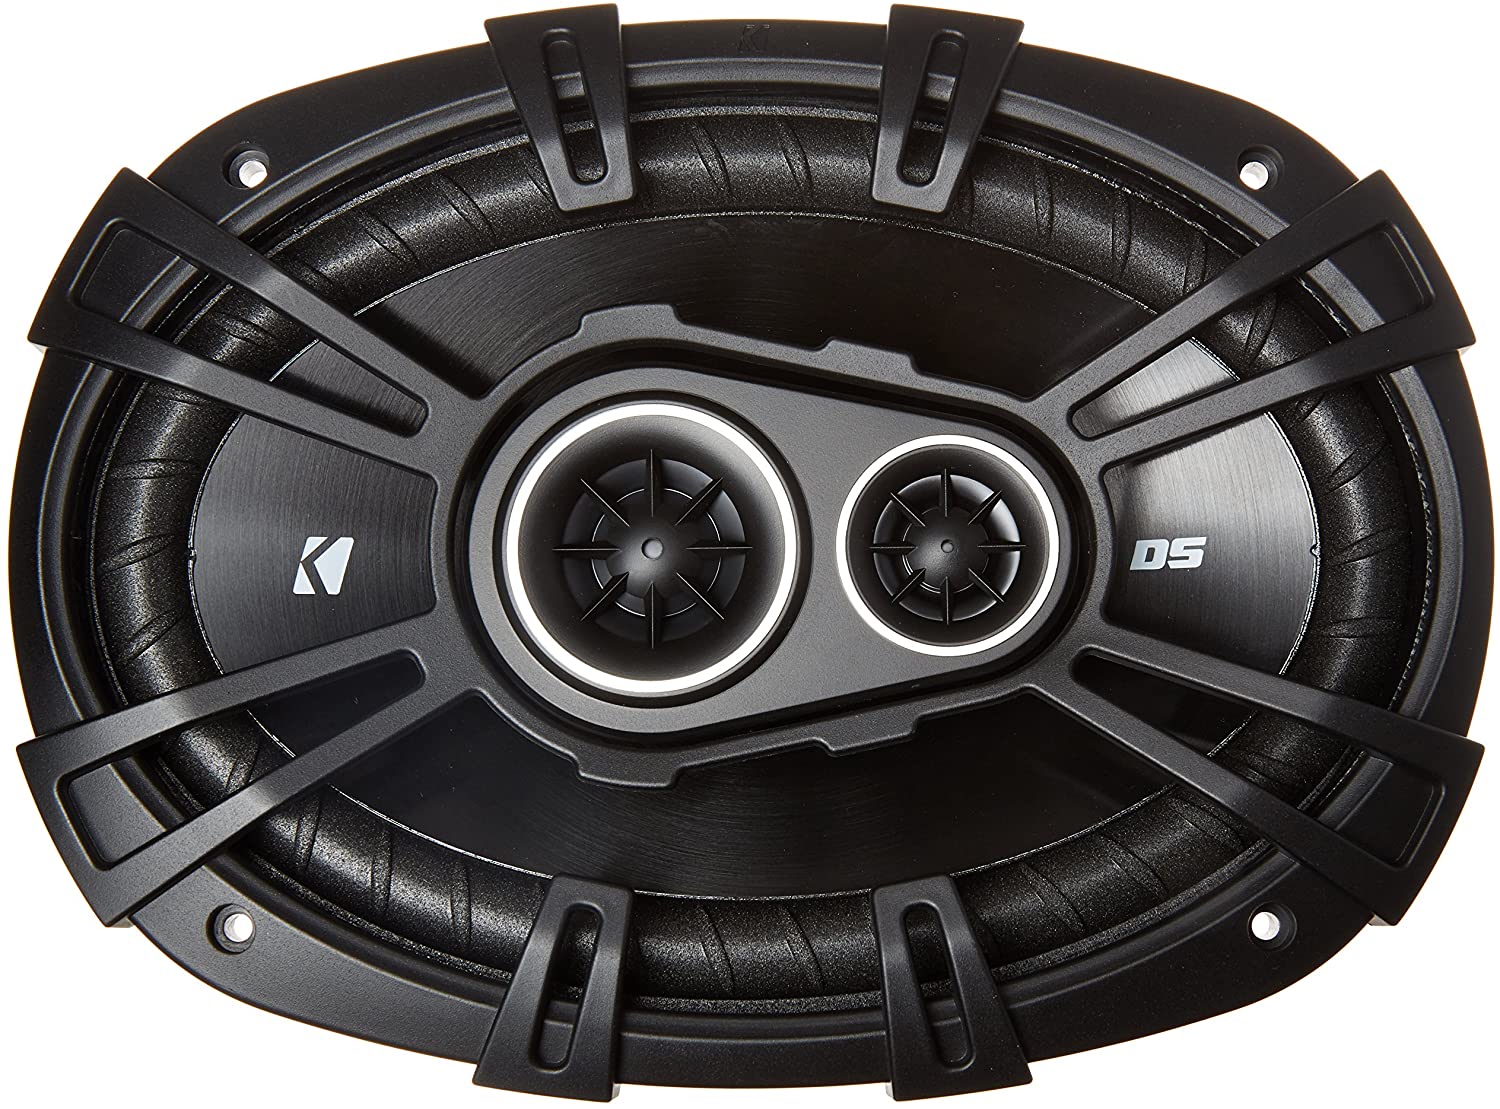 2-New Kicker 43DSC69304 Car Coaxial Speakers Best 3 Way Speakers Car Audio